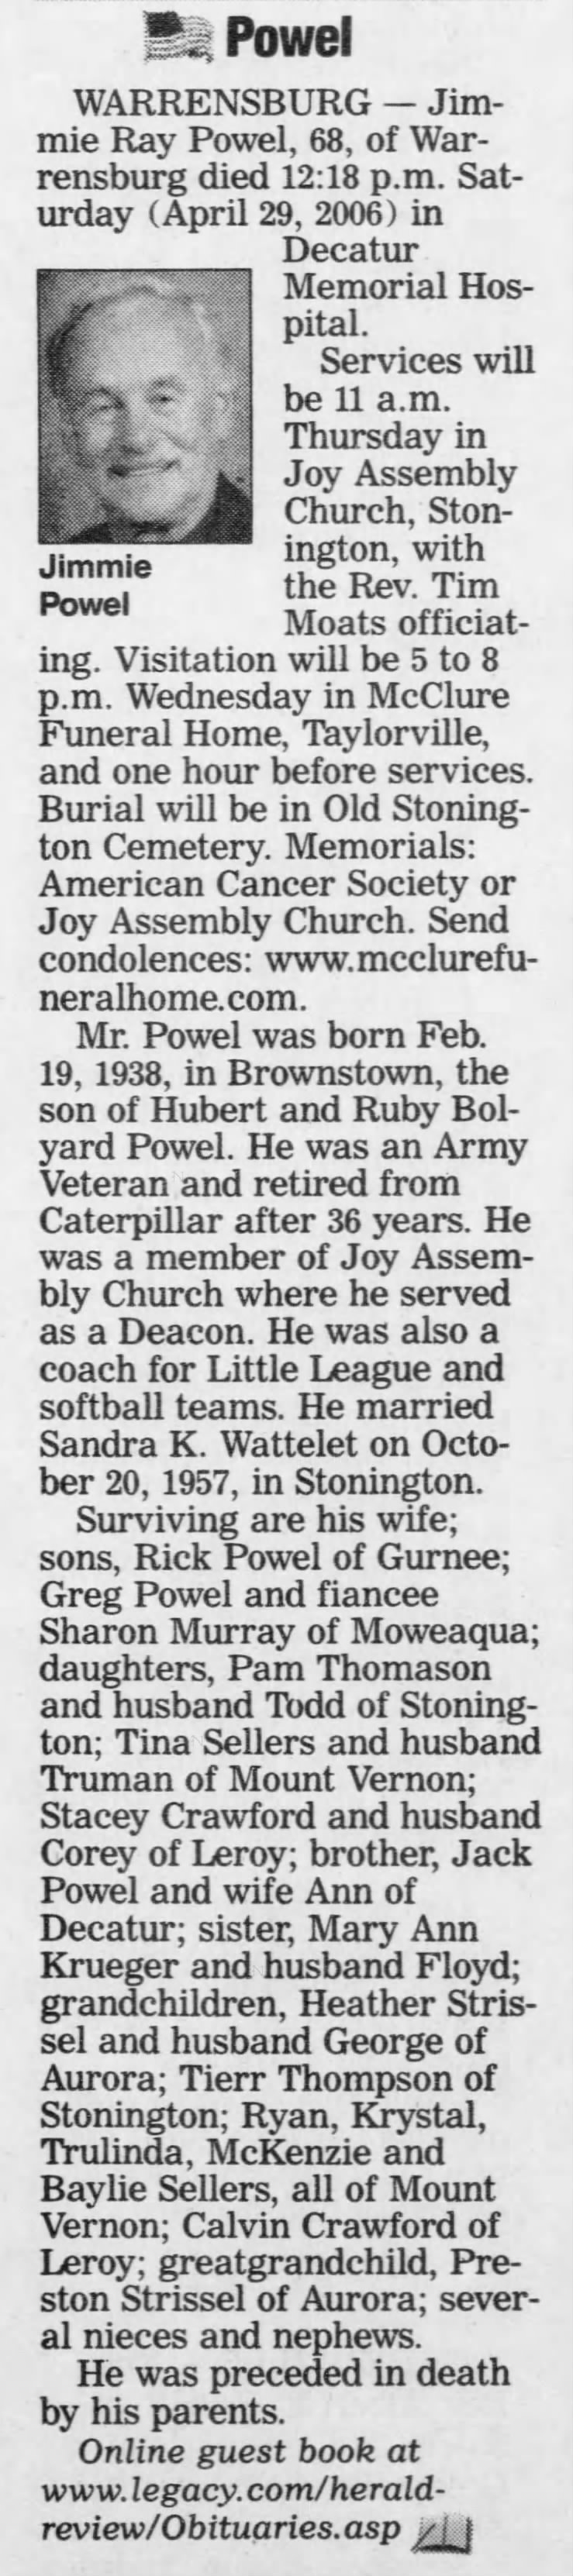 Jimmie Ray Powel Obituary 2006